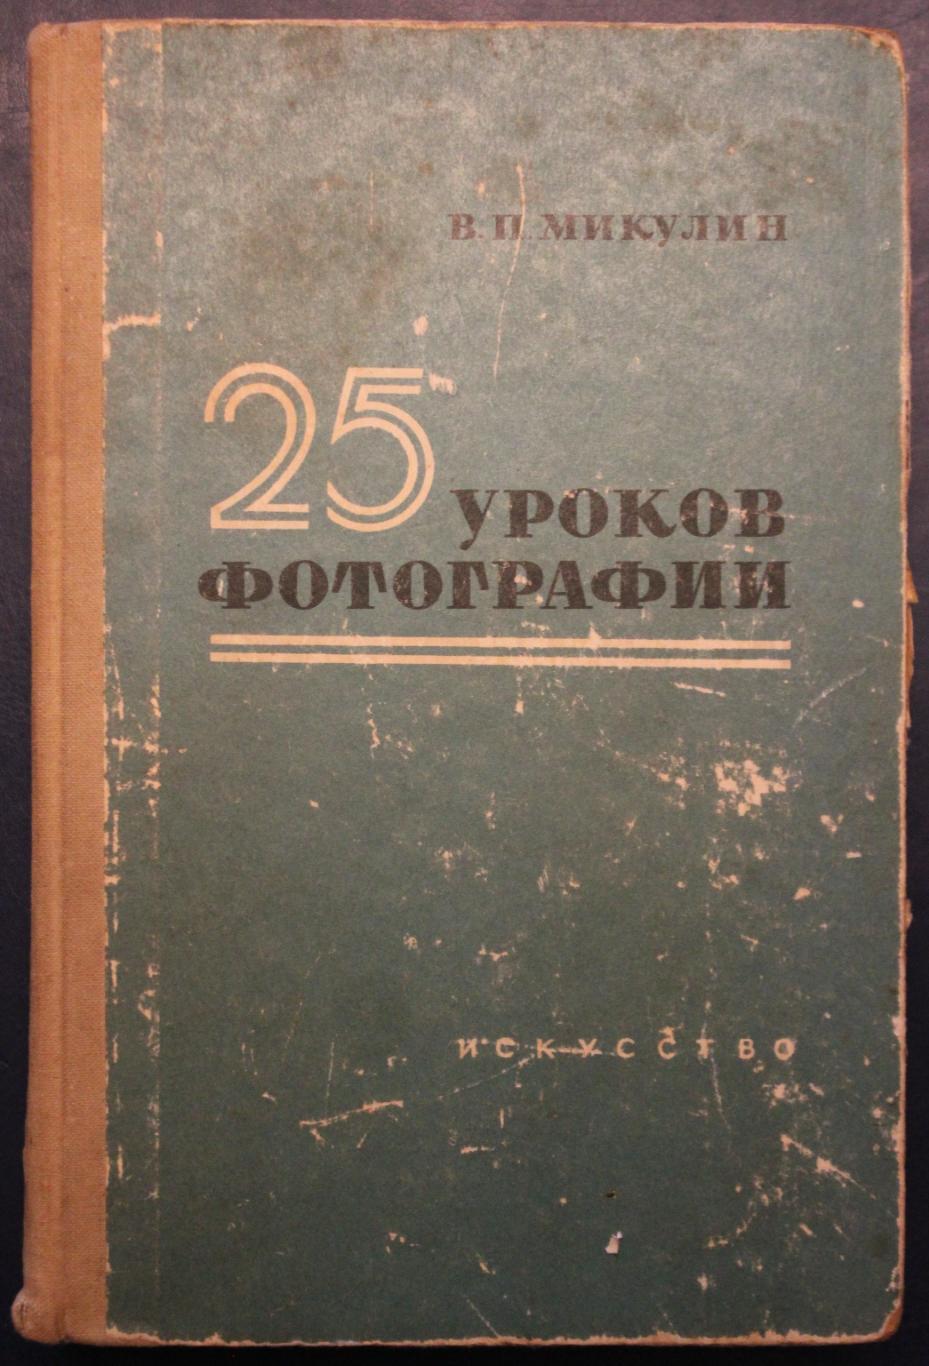 Виктор Микулин 25 уроков фотографии 11-е издание 1963